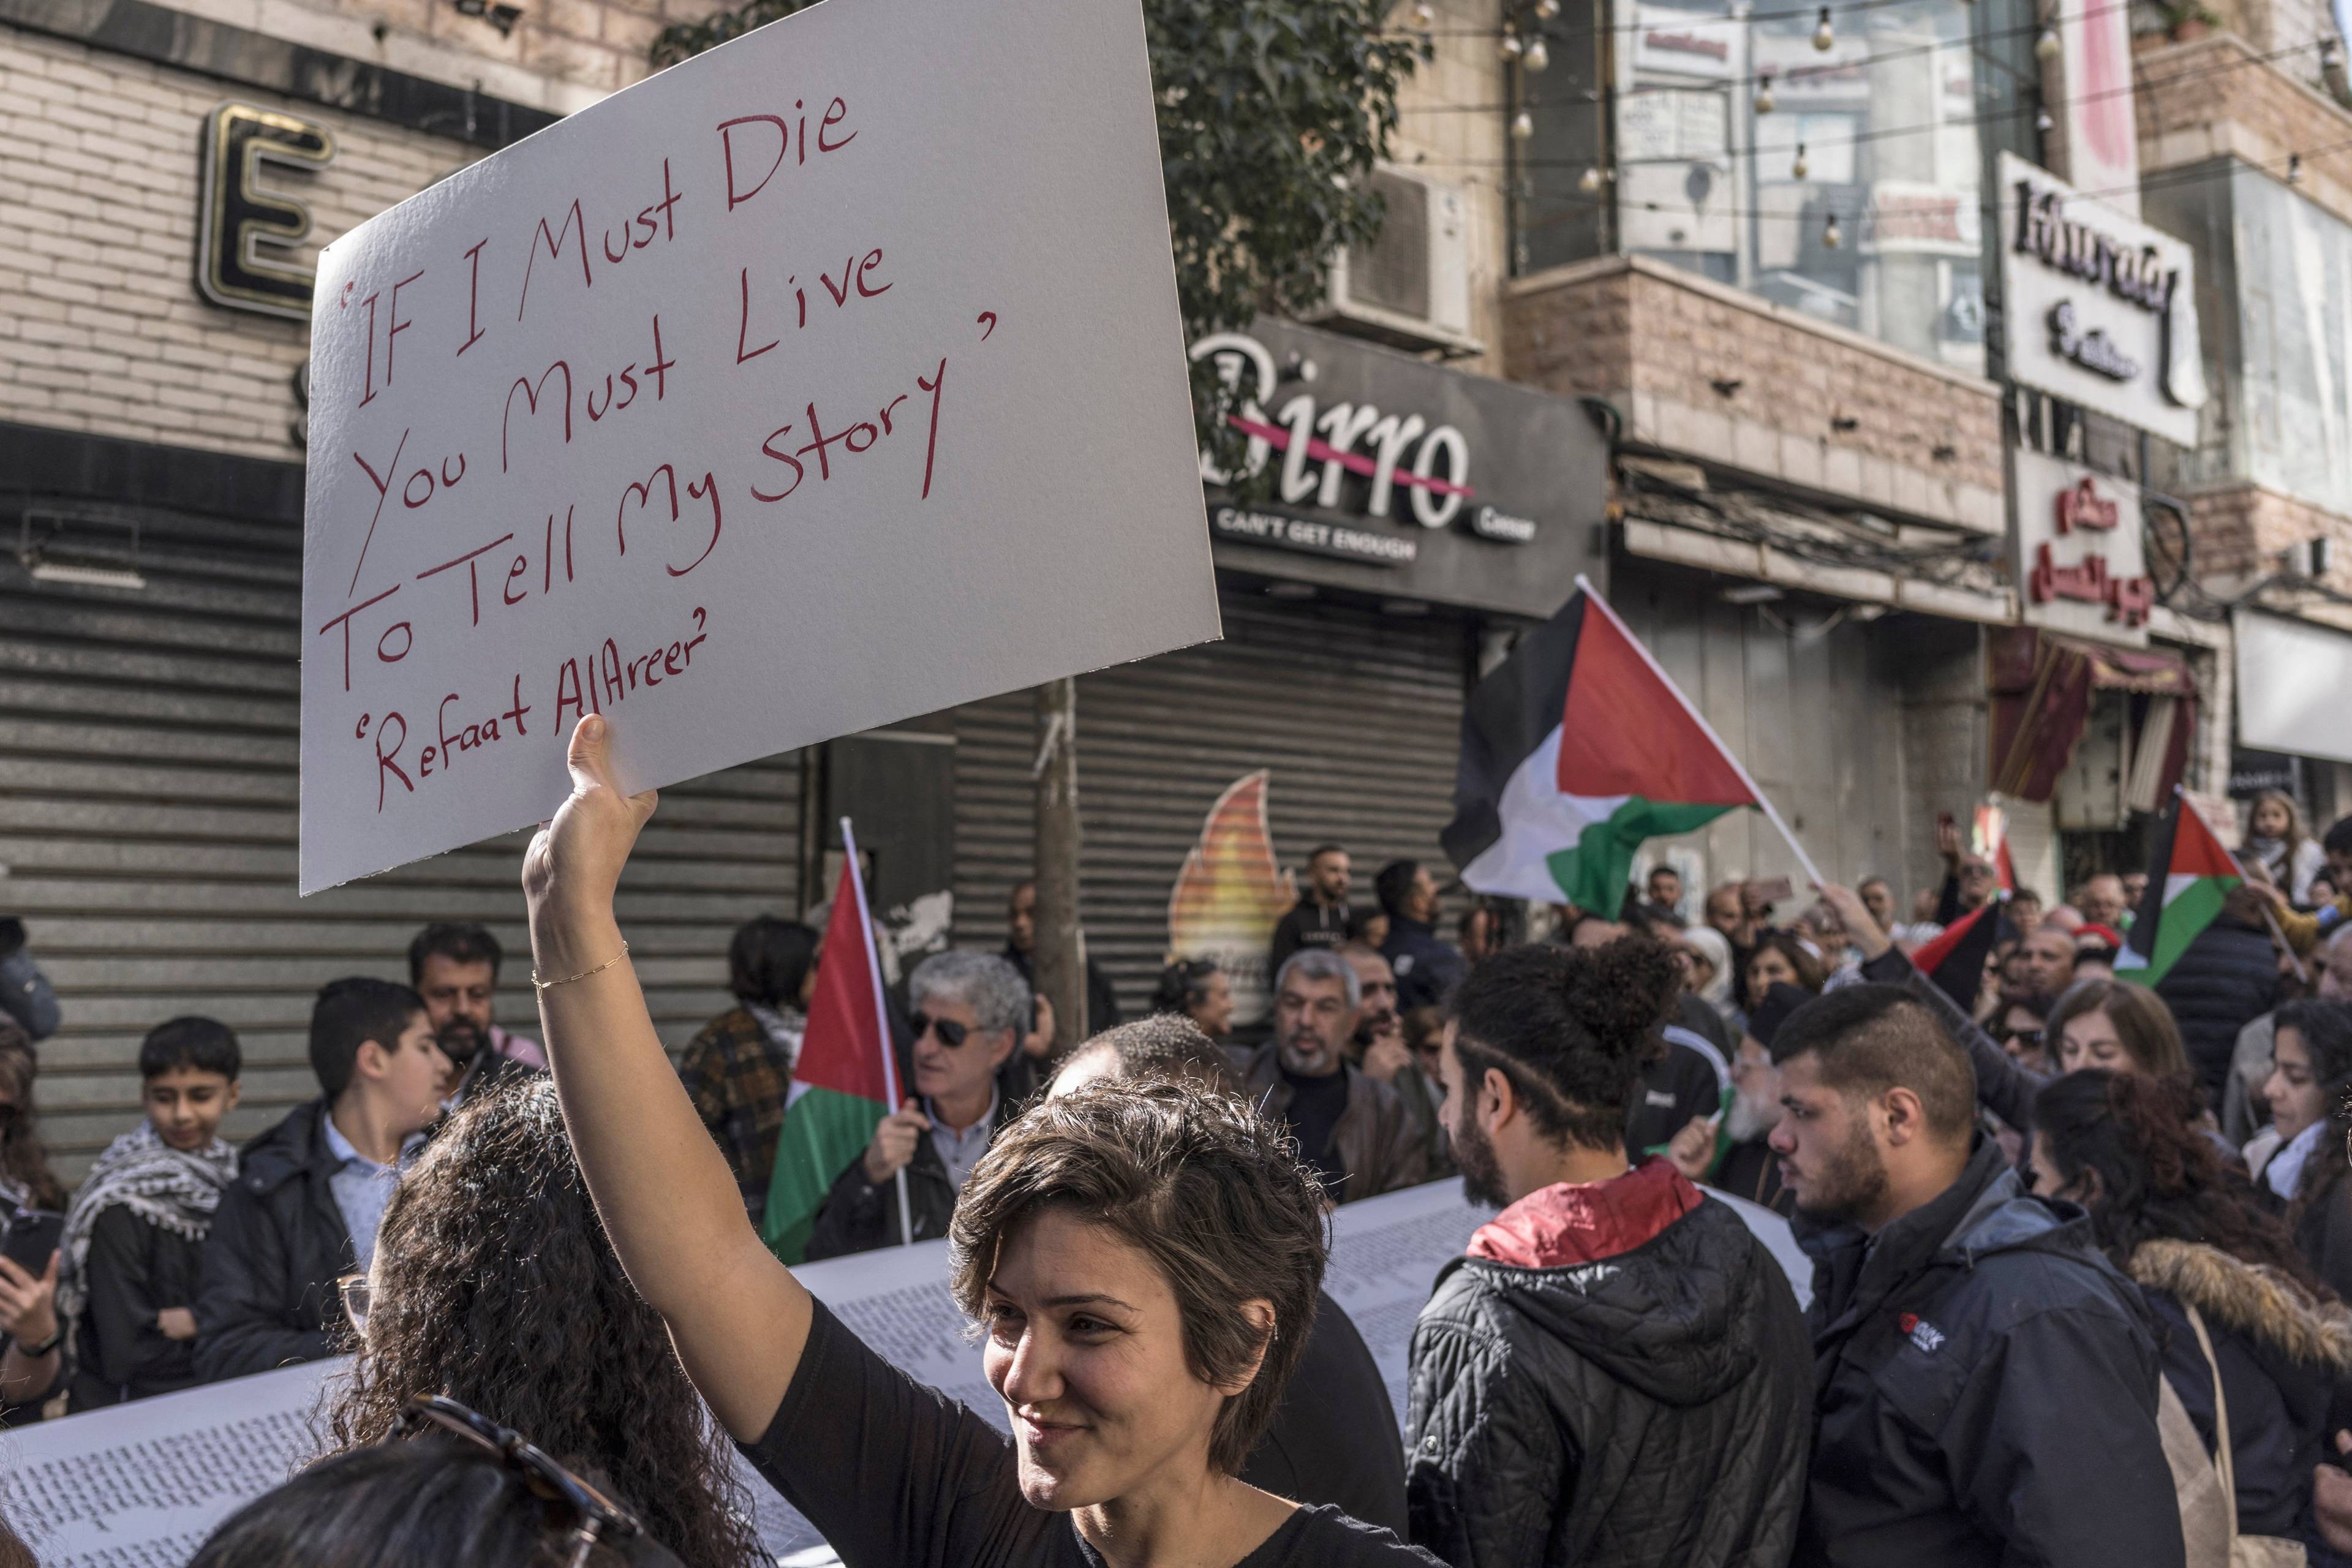 Kobieta na demonstracji trzyma transparent z angielskim napisem "Jeśli mam umrzeć, musisz żyć, by opowiedzieć moją historię